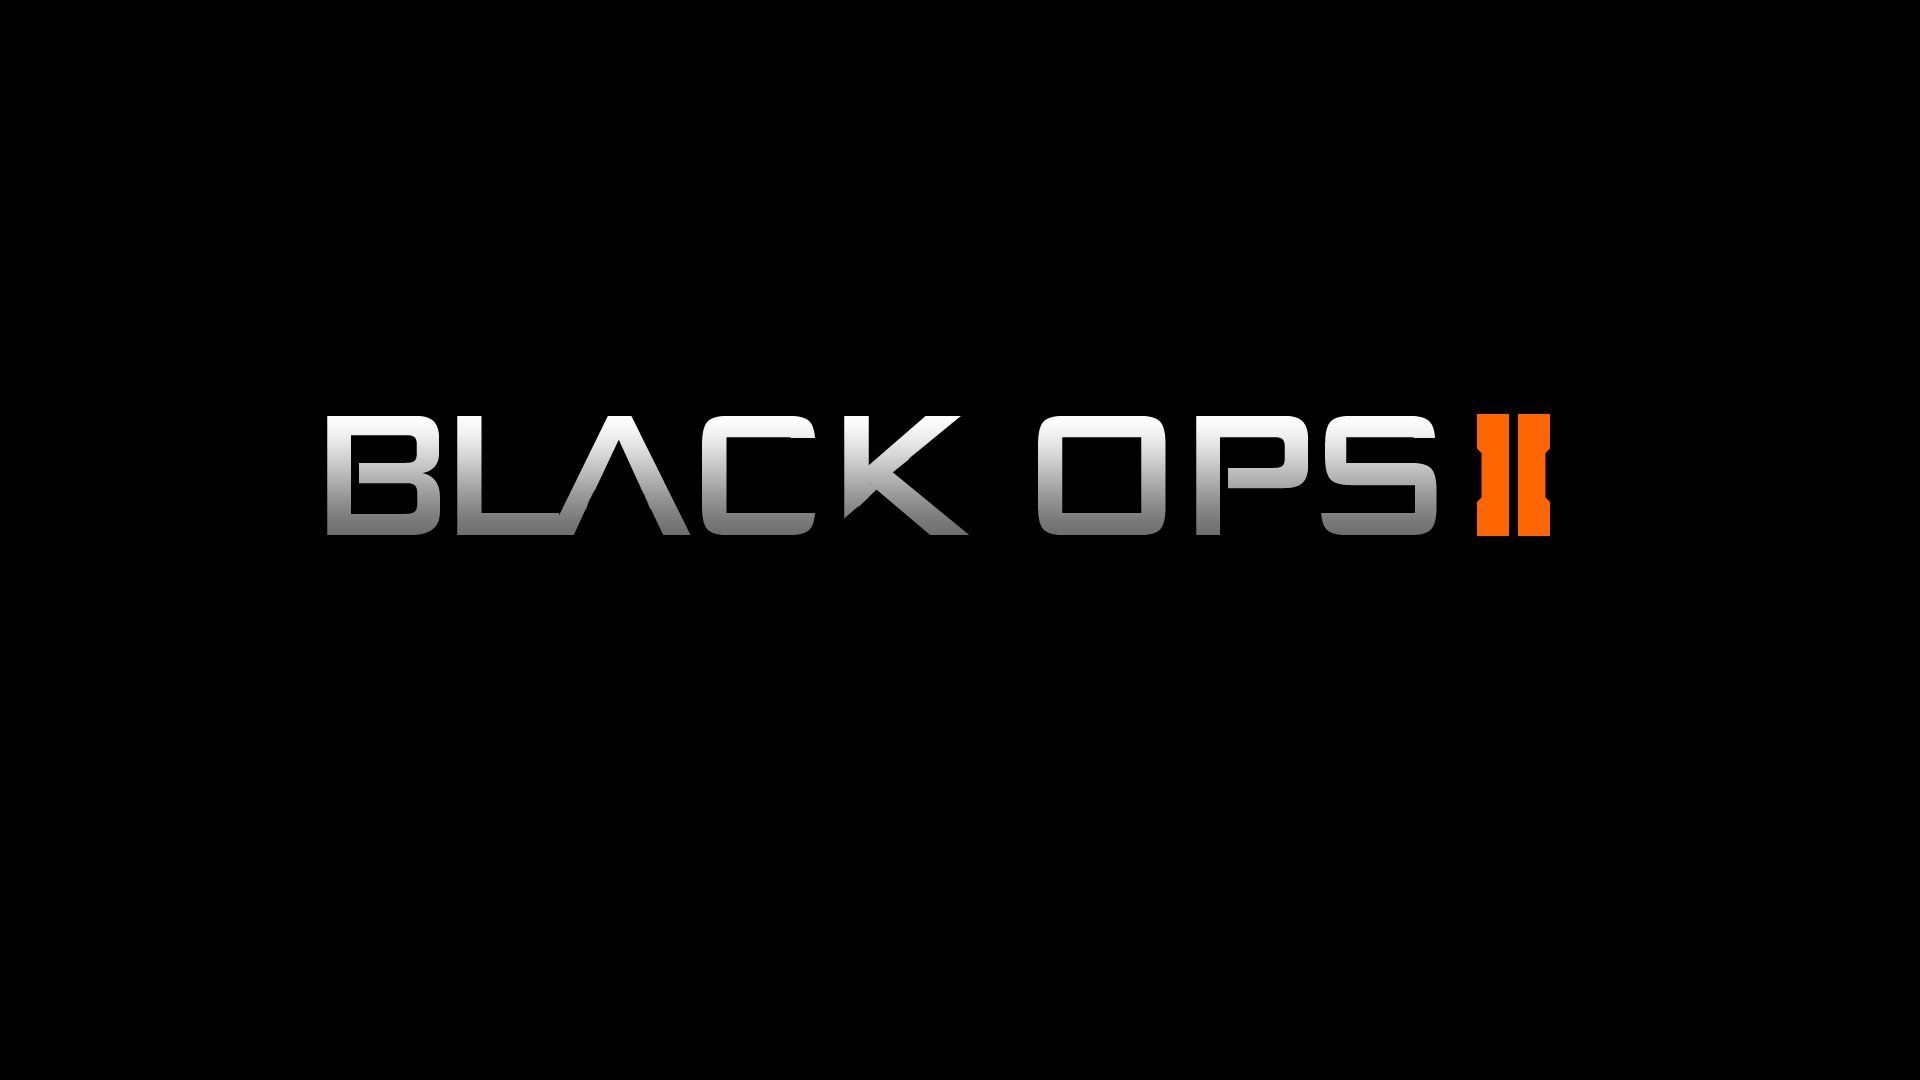 Black ops 2 download